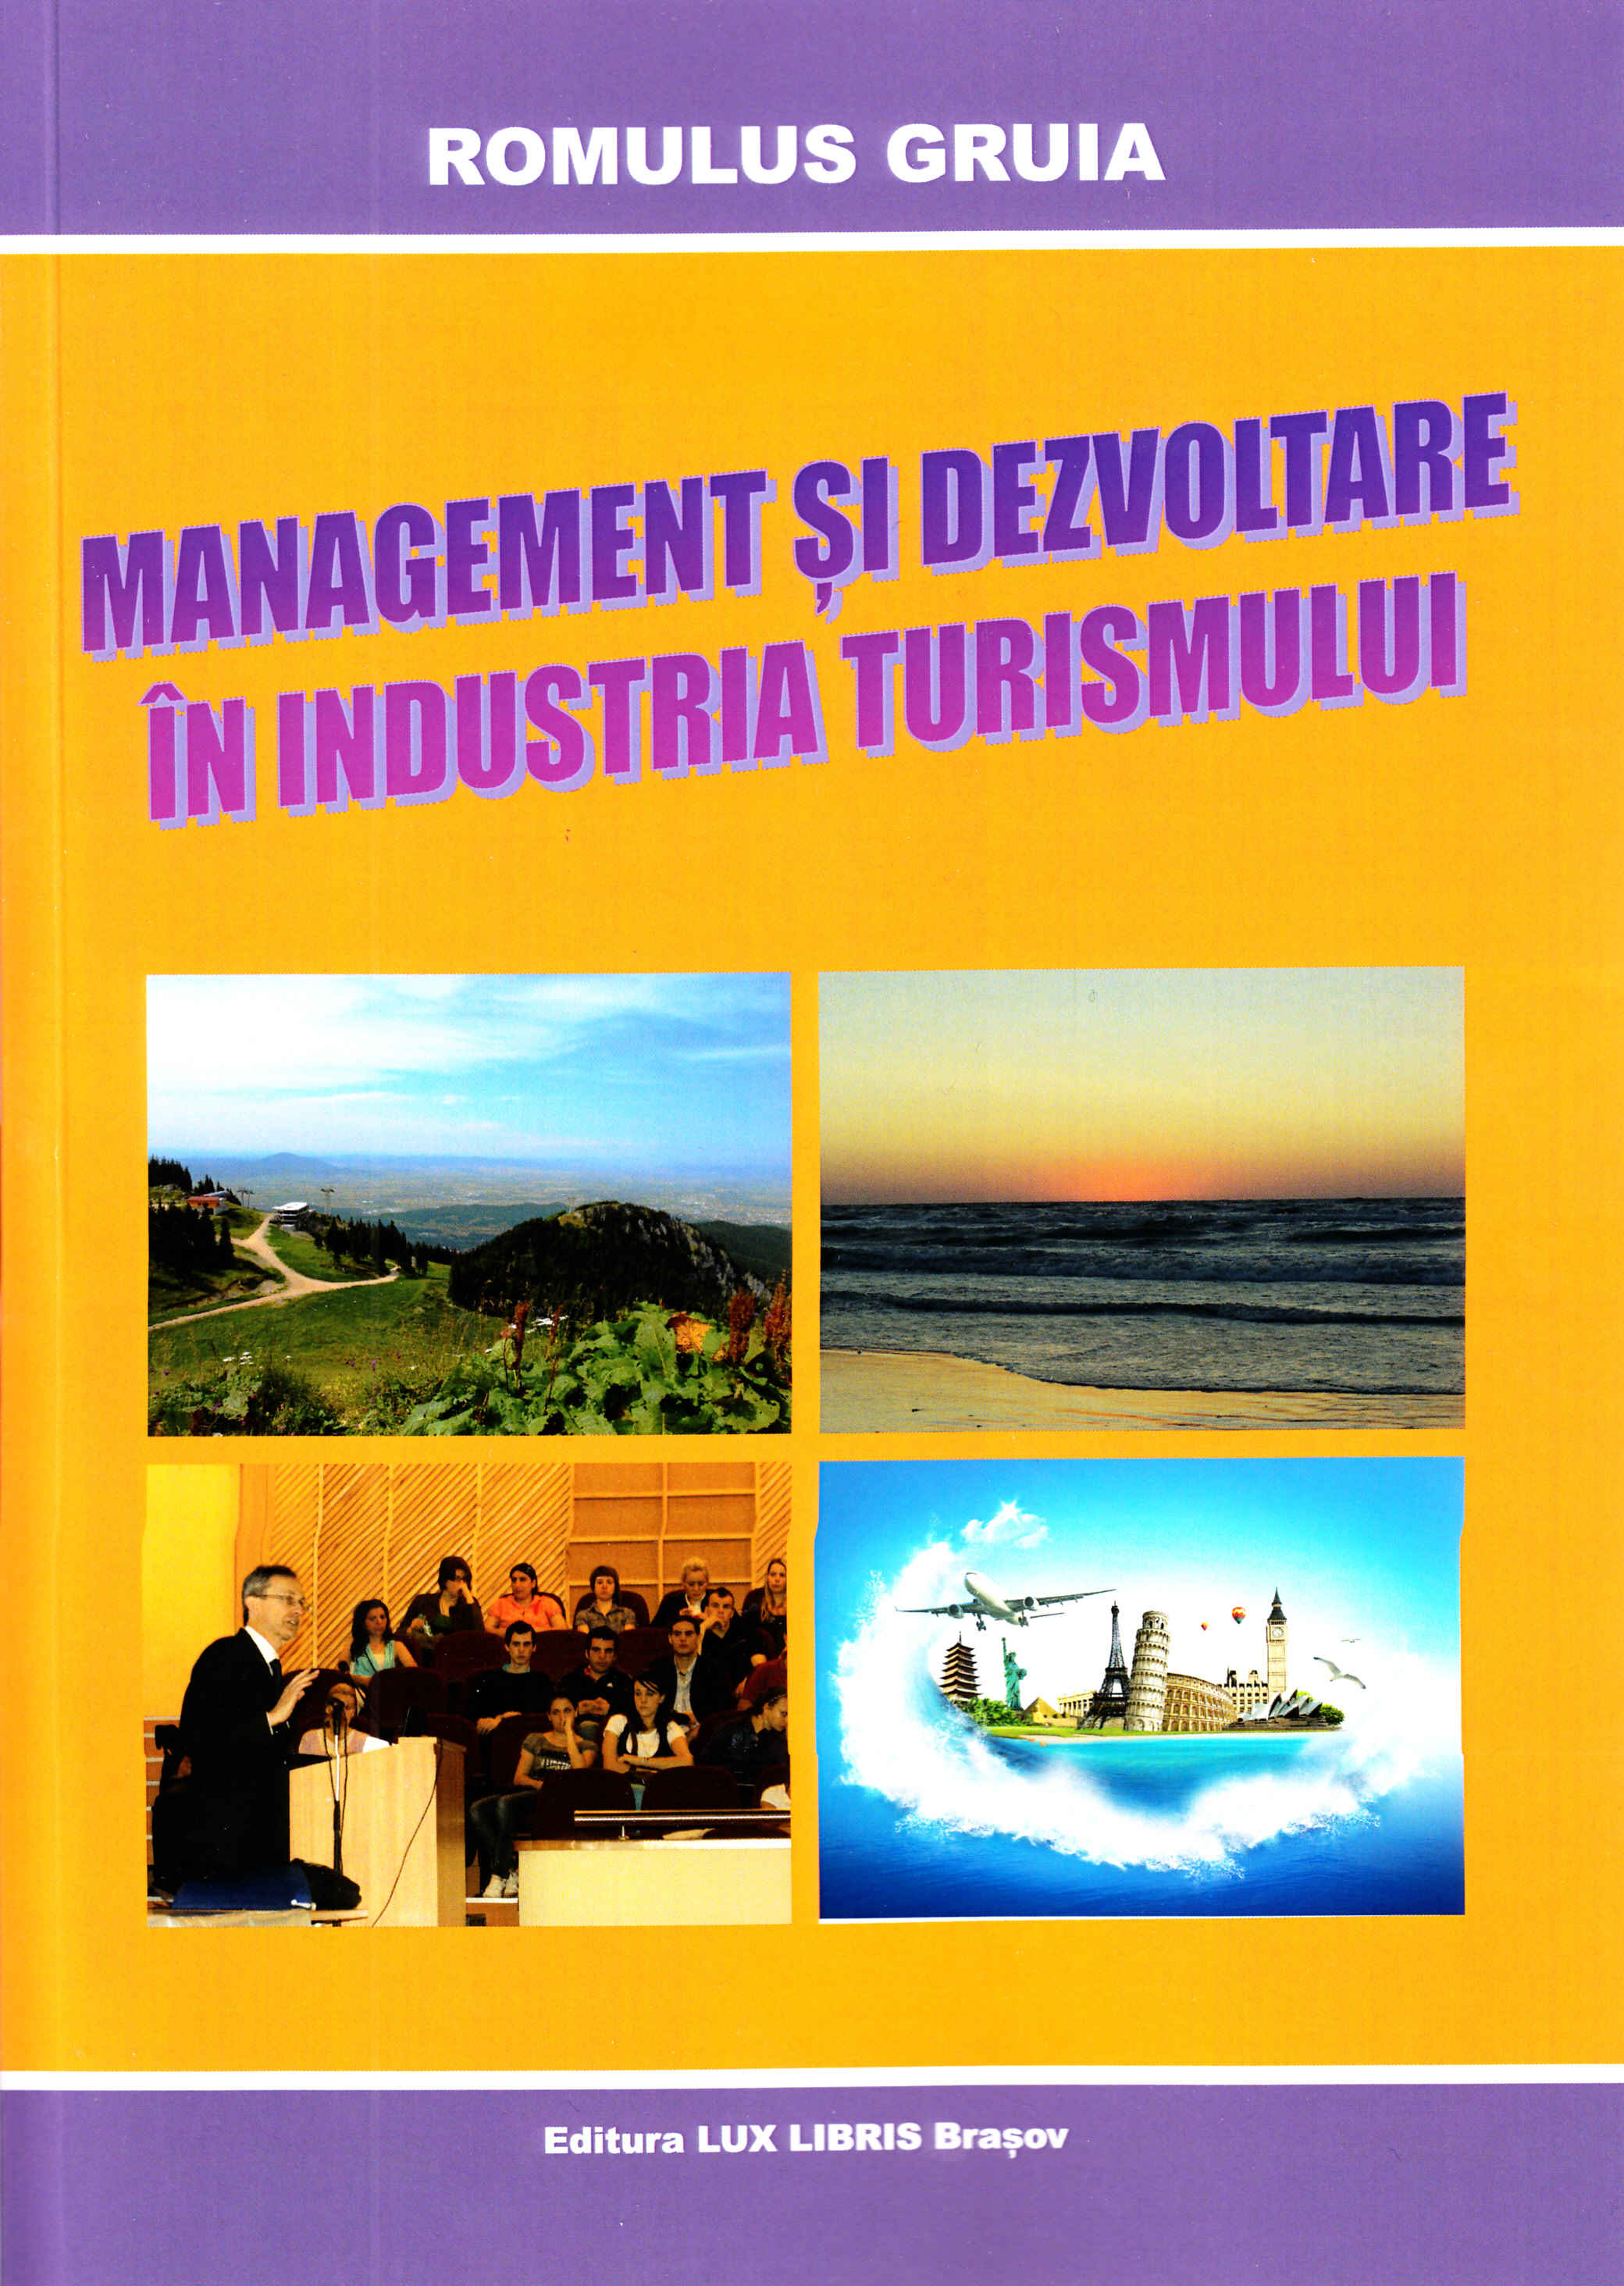 Management Si Dezvoltare In Industria Turismului - Romulus Gruia